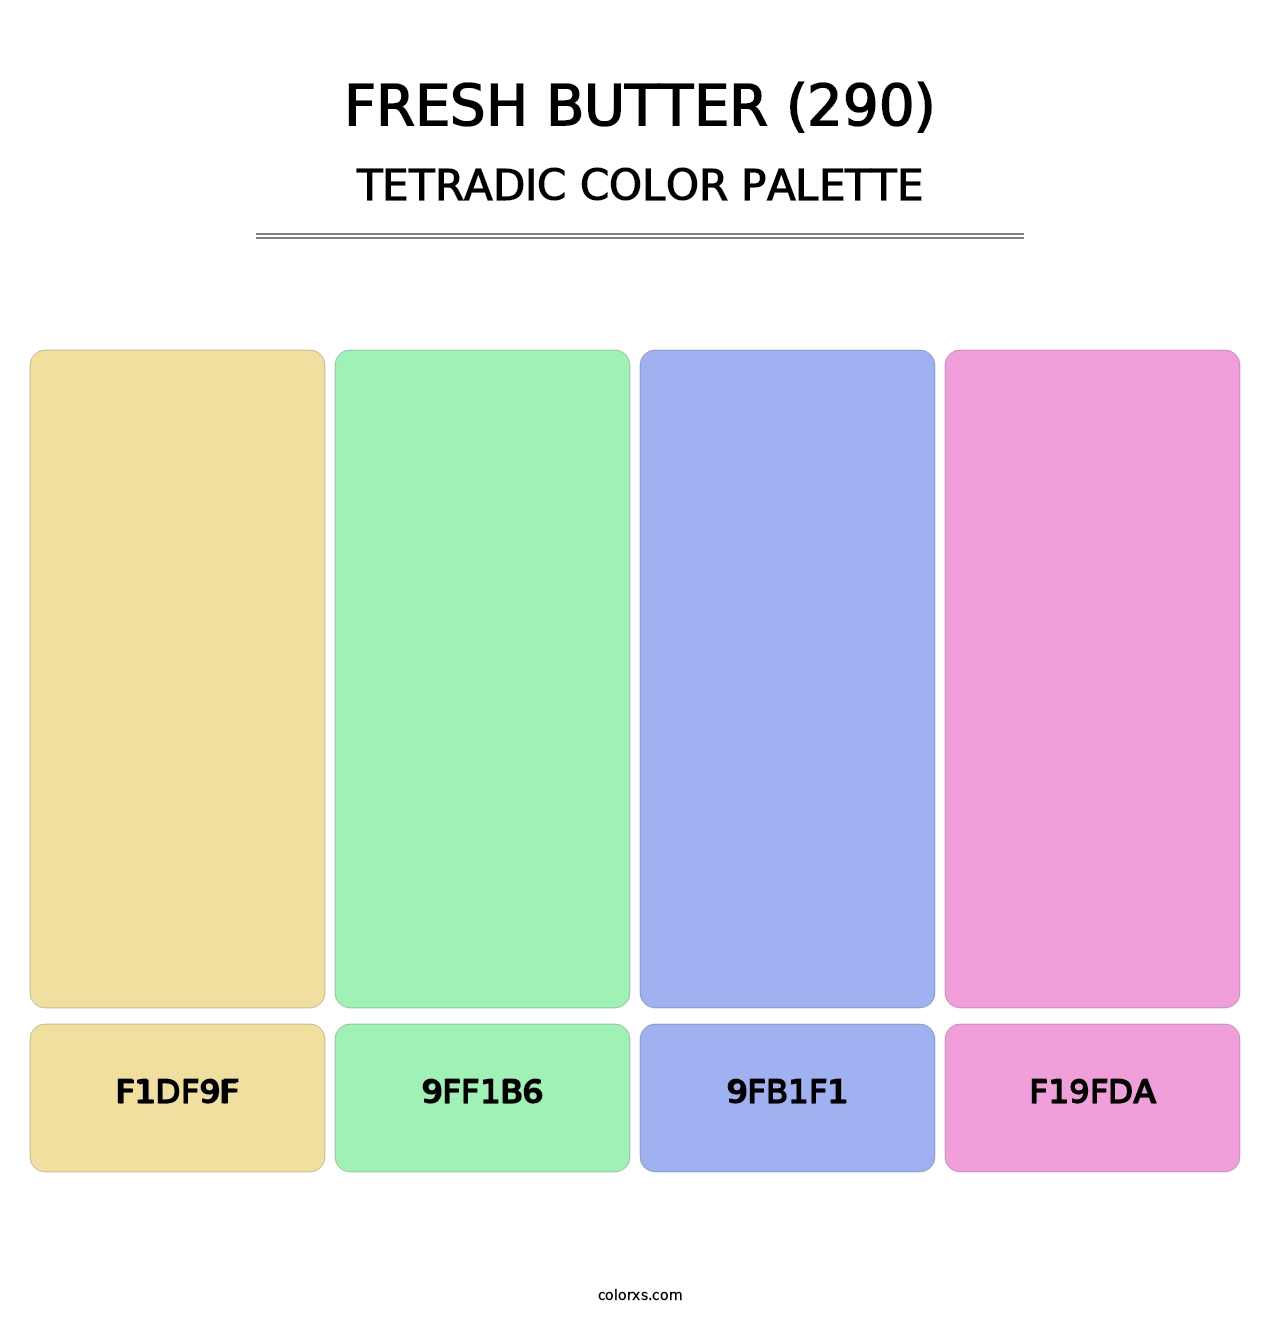 Fresh Butter (290) - Tetradic Color Palette